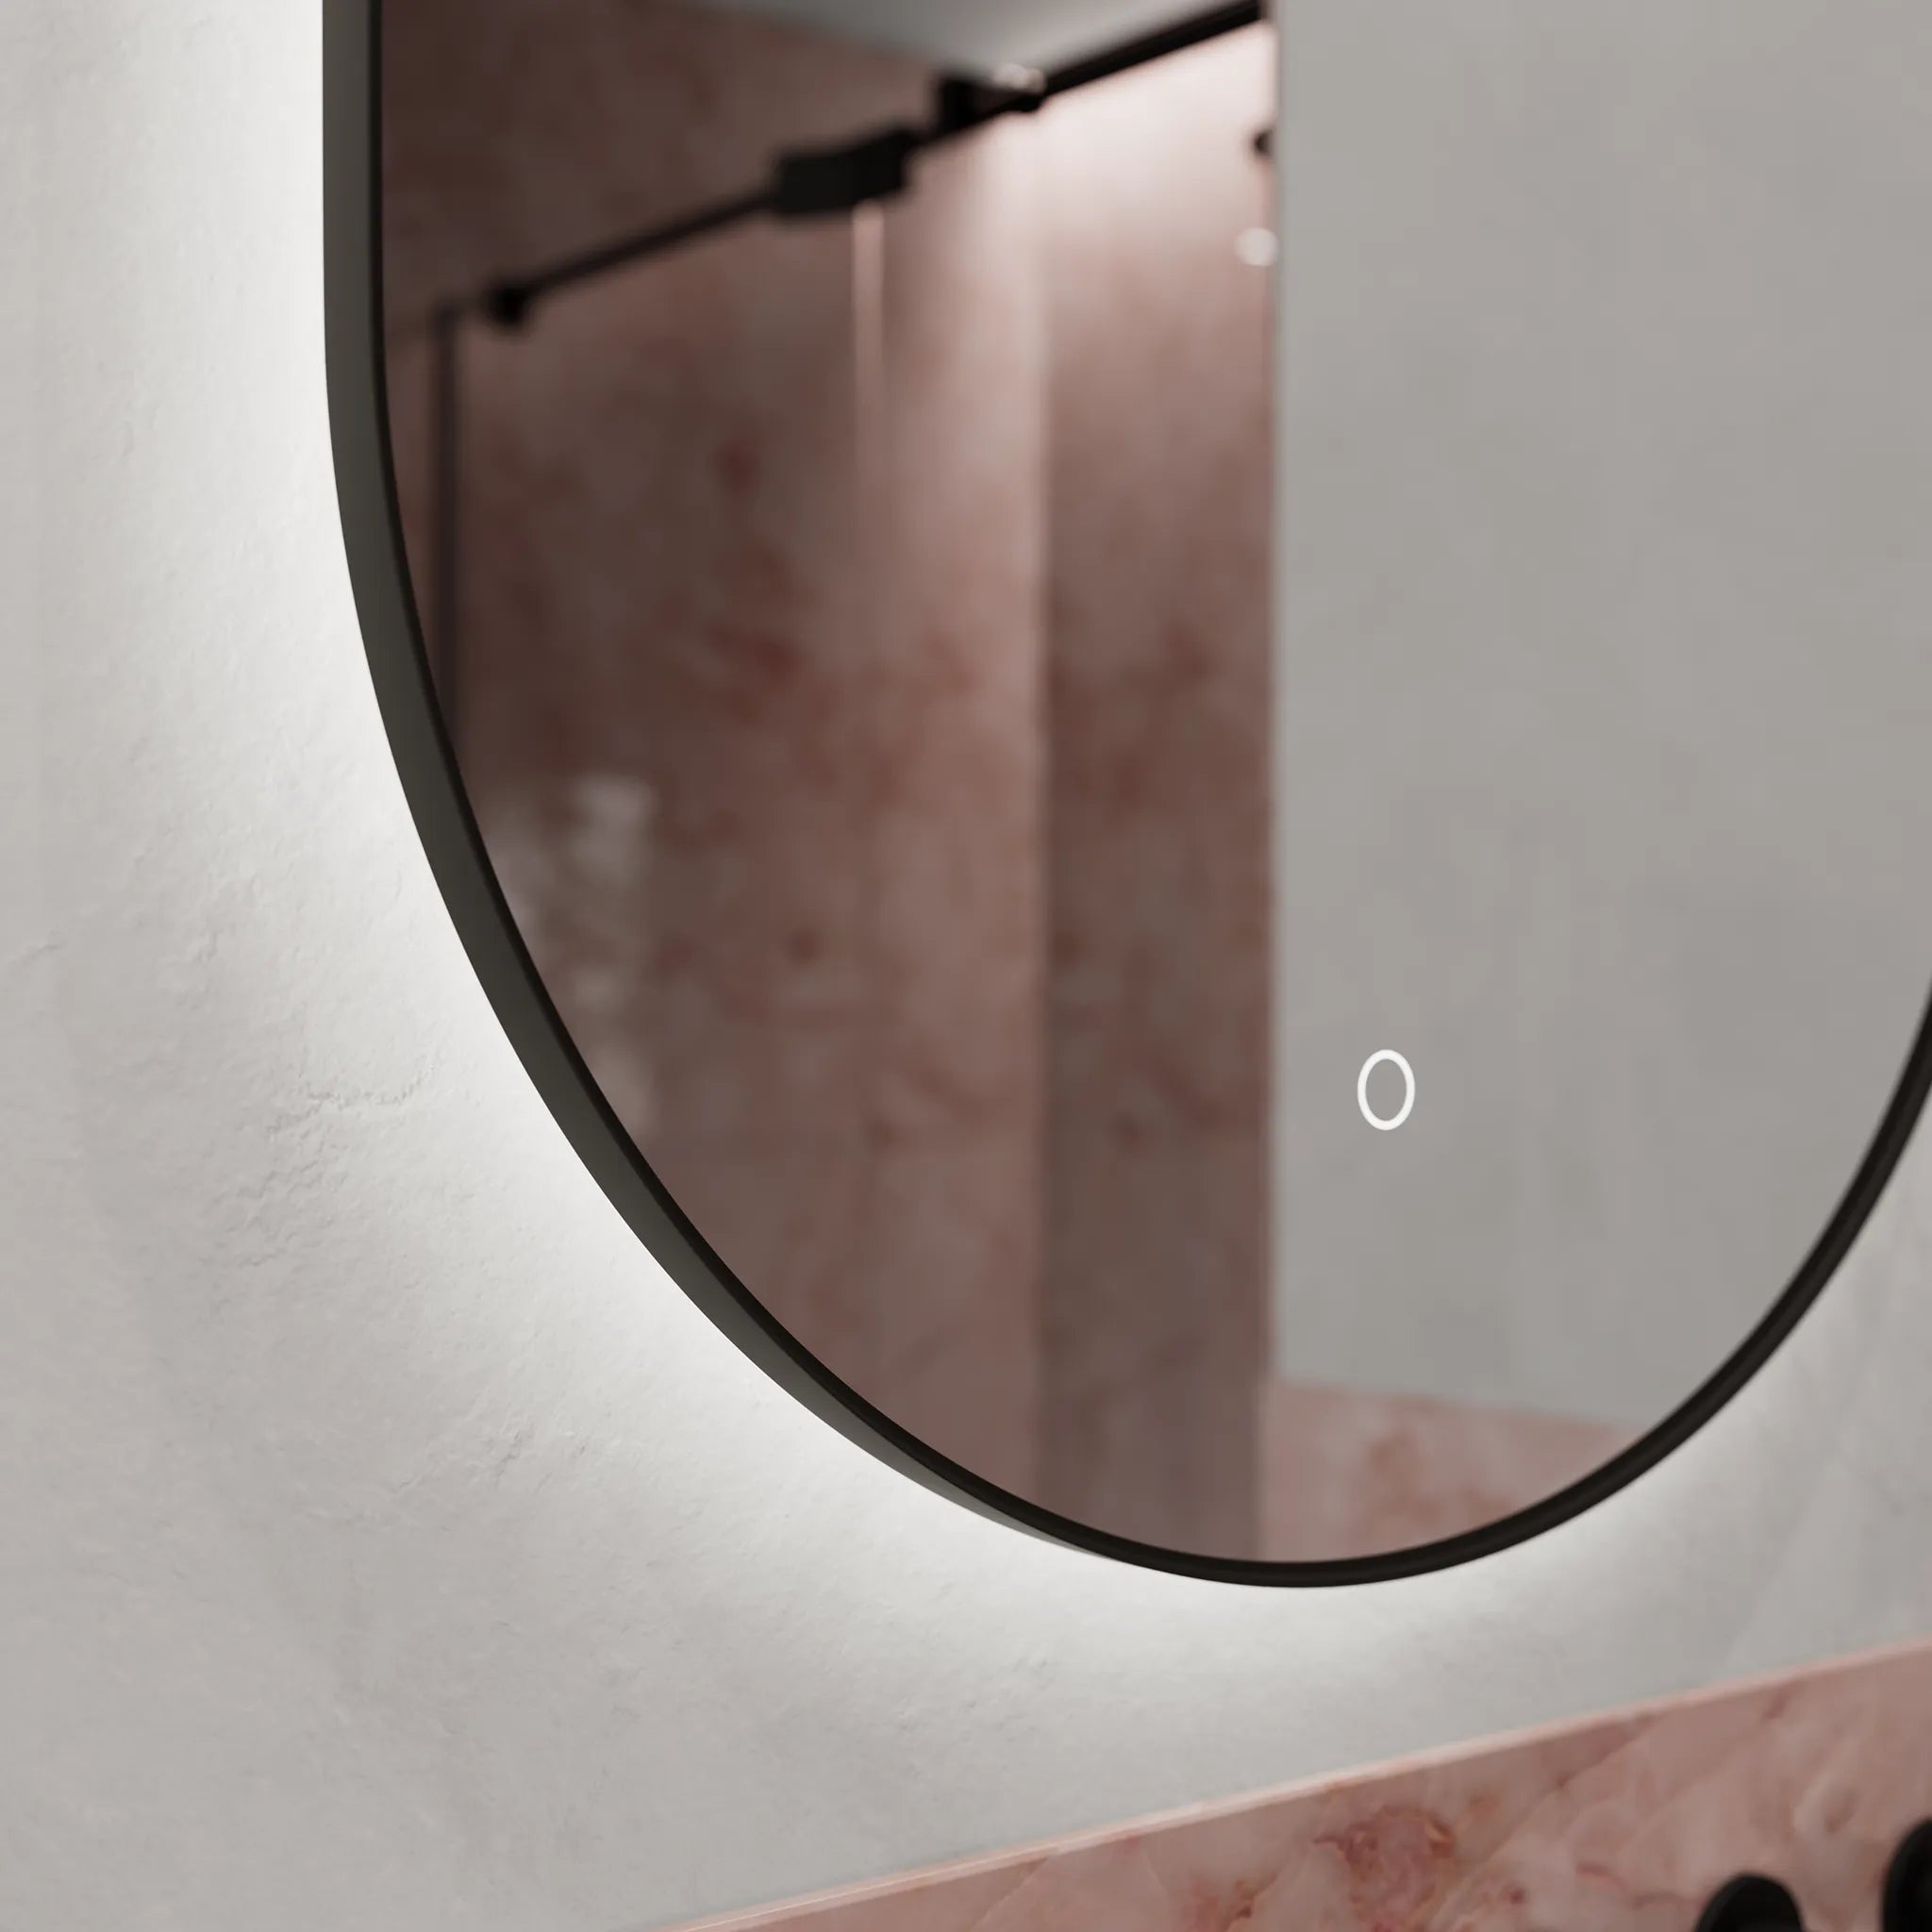 Oslo Oval LED Mirror #colour_black